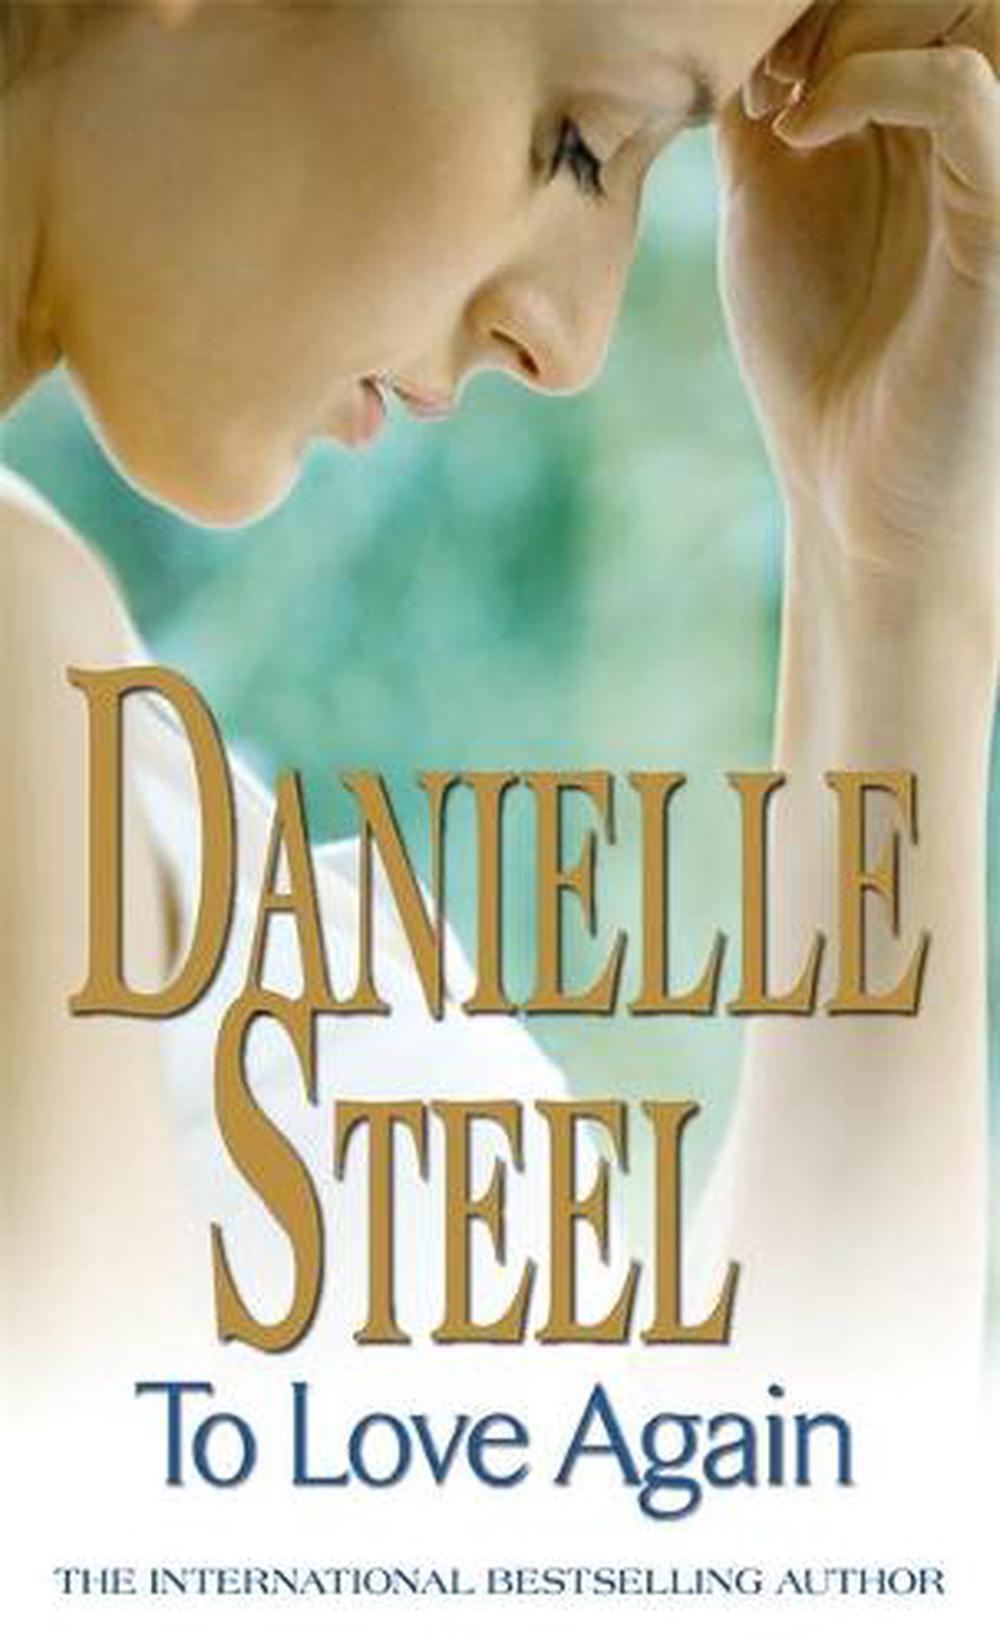 heartbeat book by danielle steel